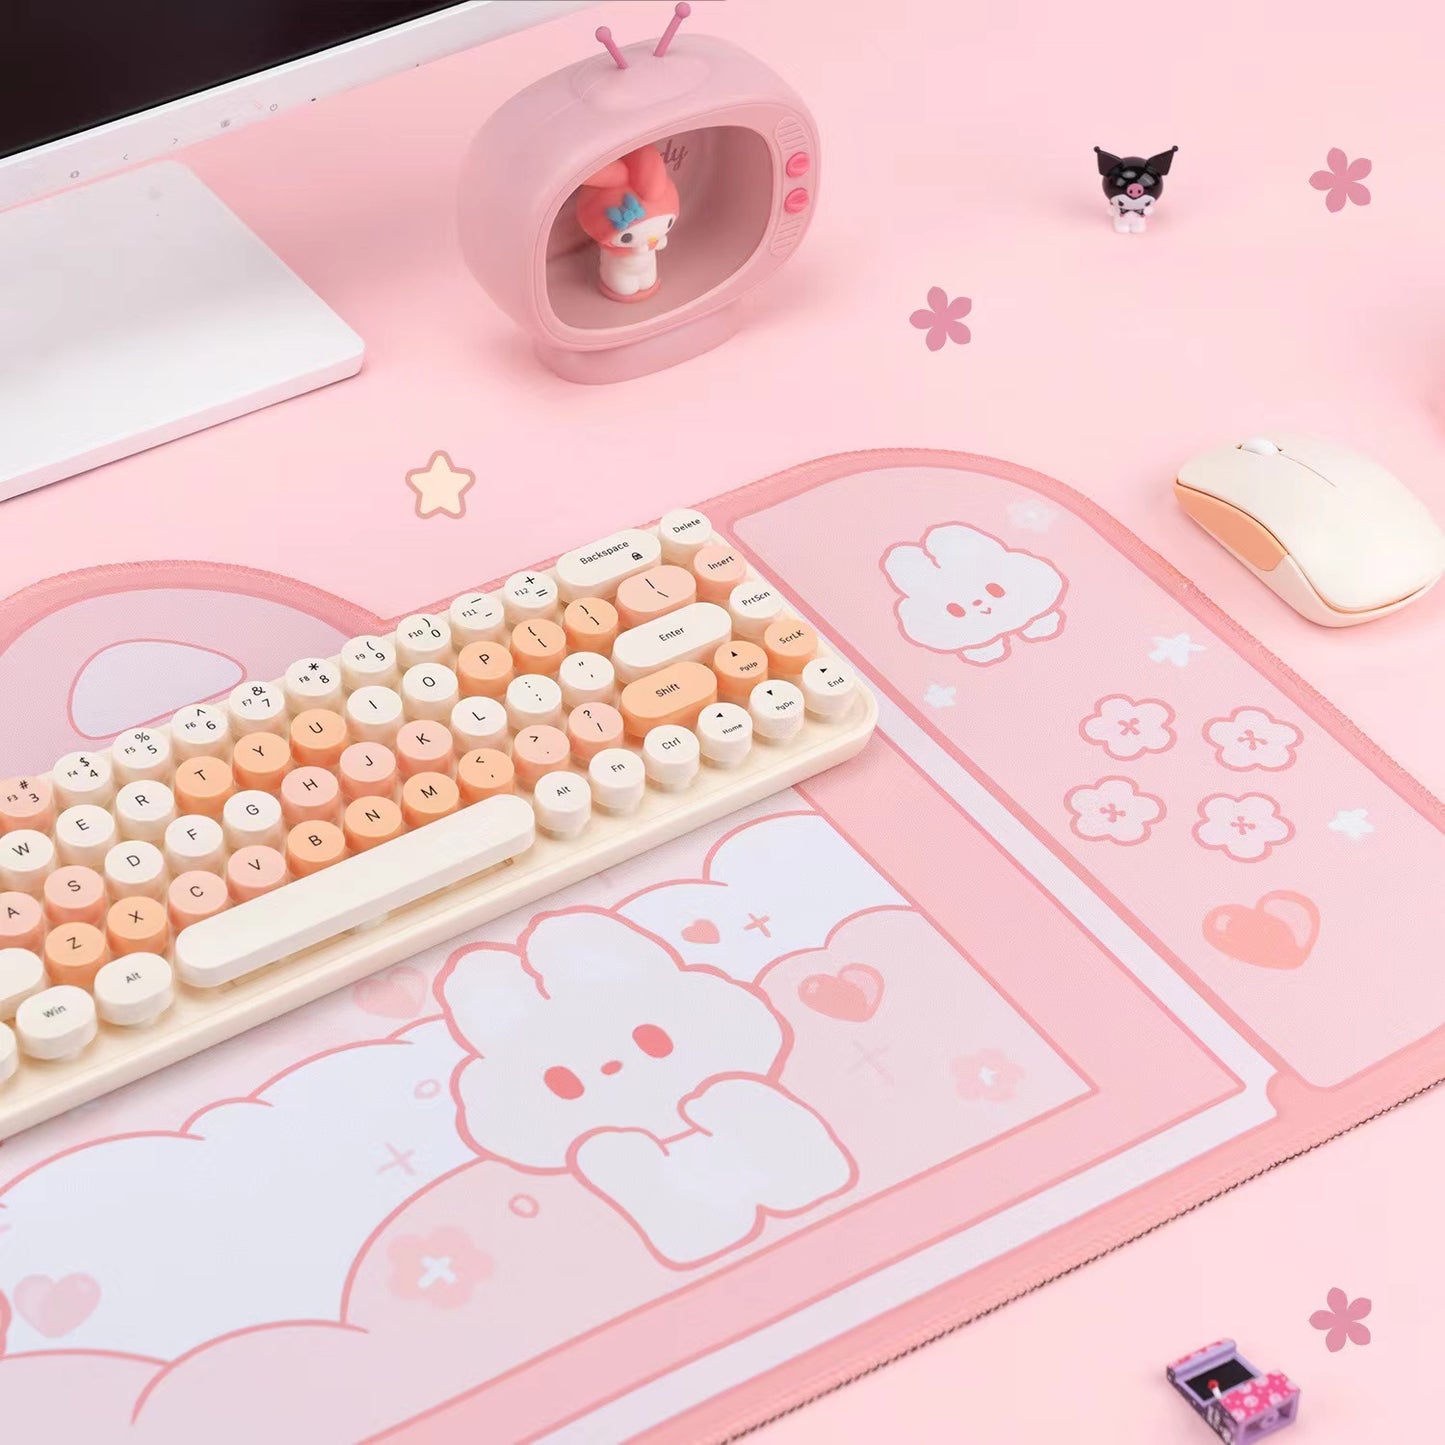 BlingKiyo Bunny Large Mouse Pad / Desk Mat